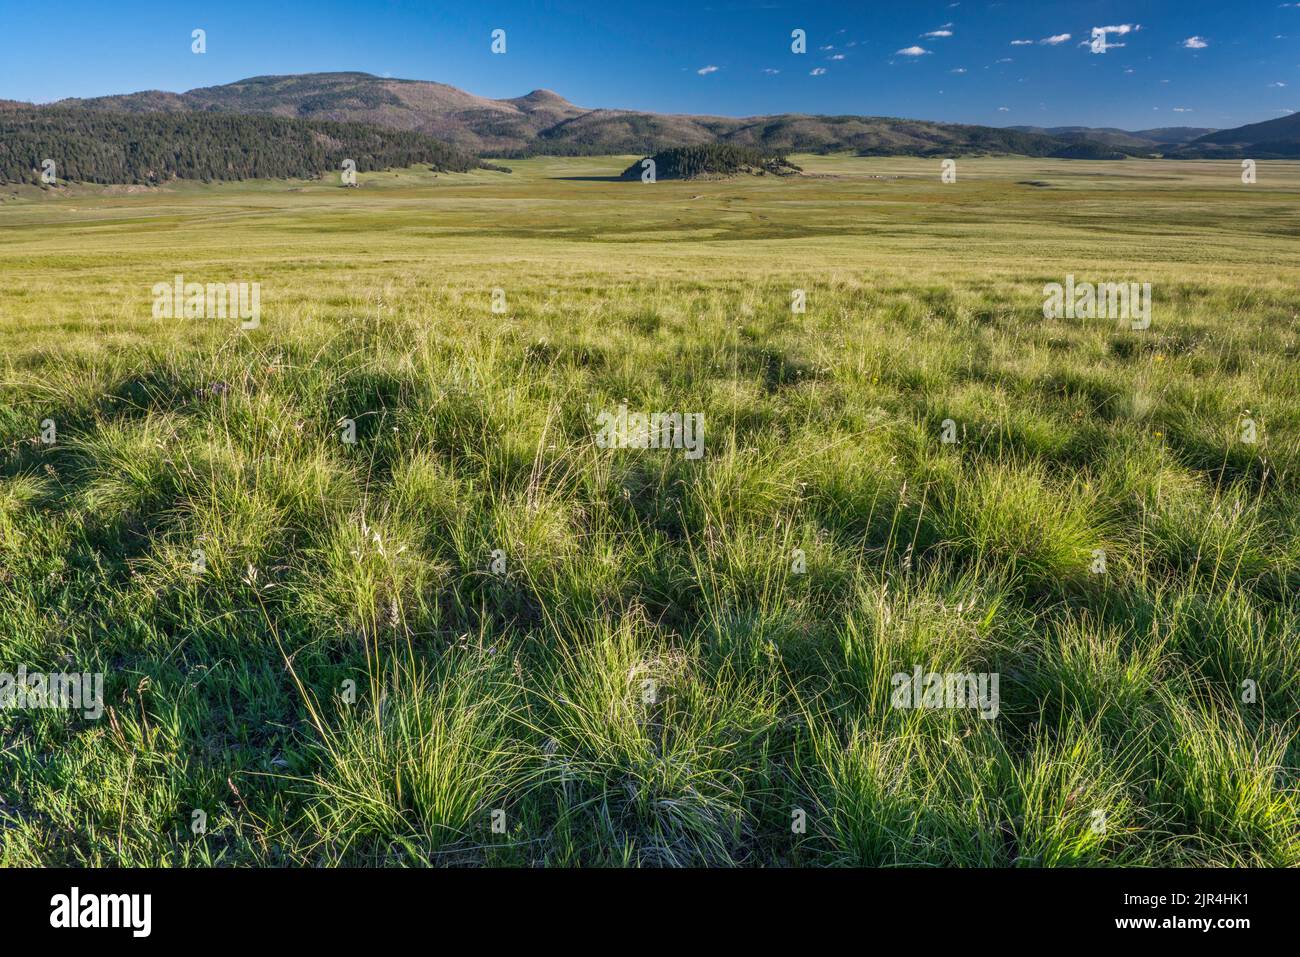 Bergiges Grasland bei Valle Grande, Redondo Peak auf der linken Seite, Cerro la Jara in der Mitte, am frühen Morgen, im Valles Caldera Natl Preserve, New Mexico, USA Stockfoto